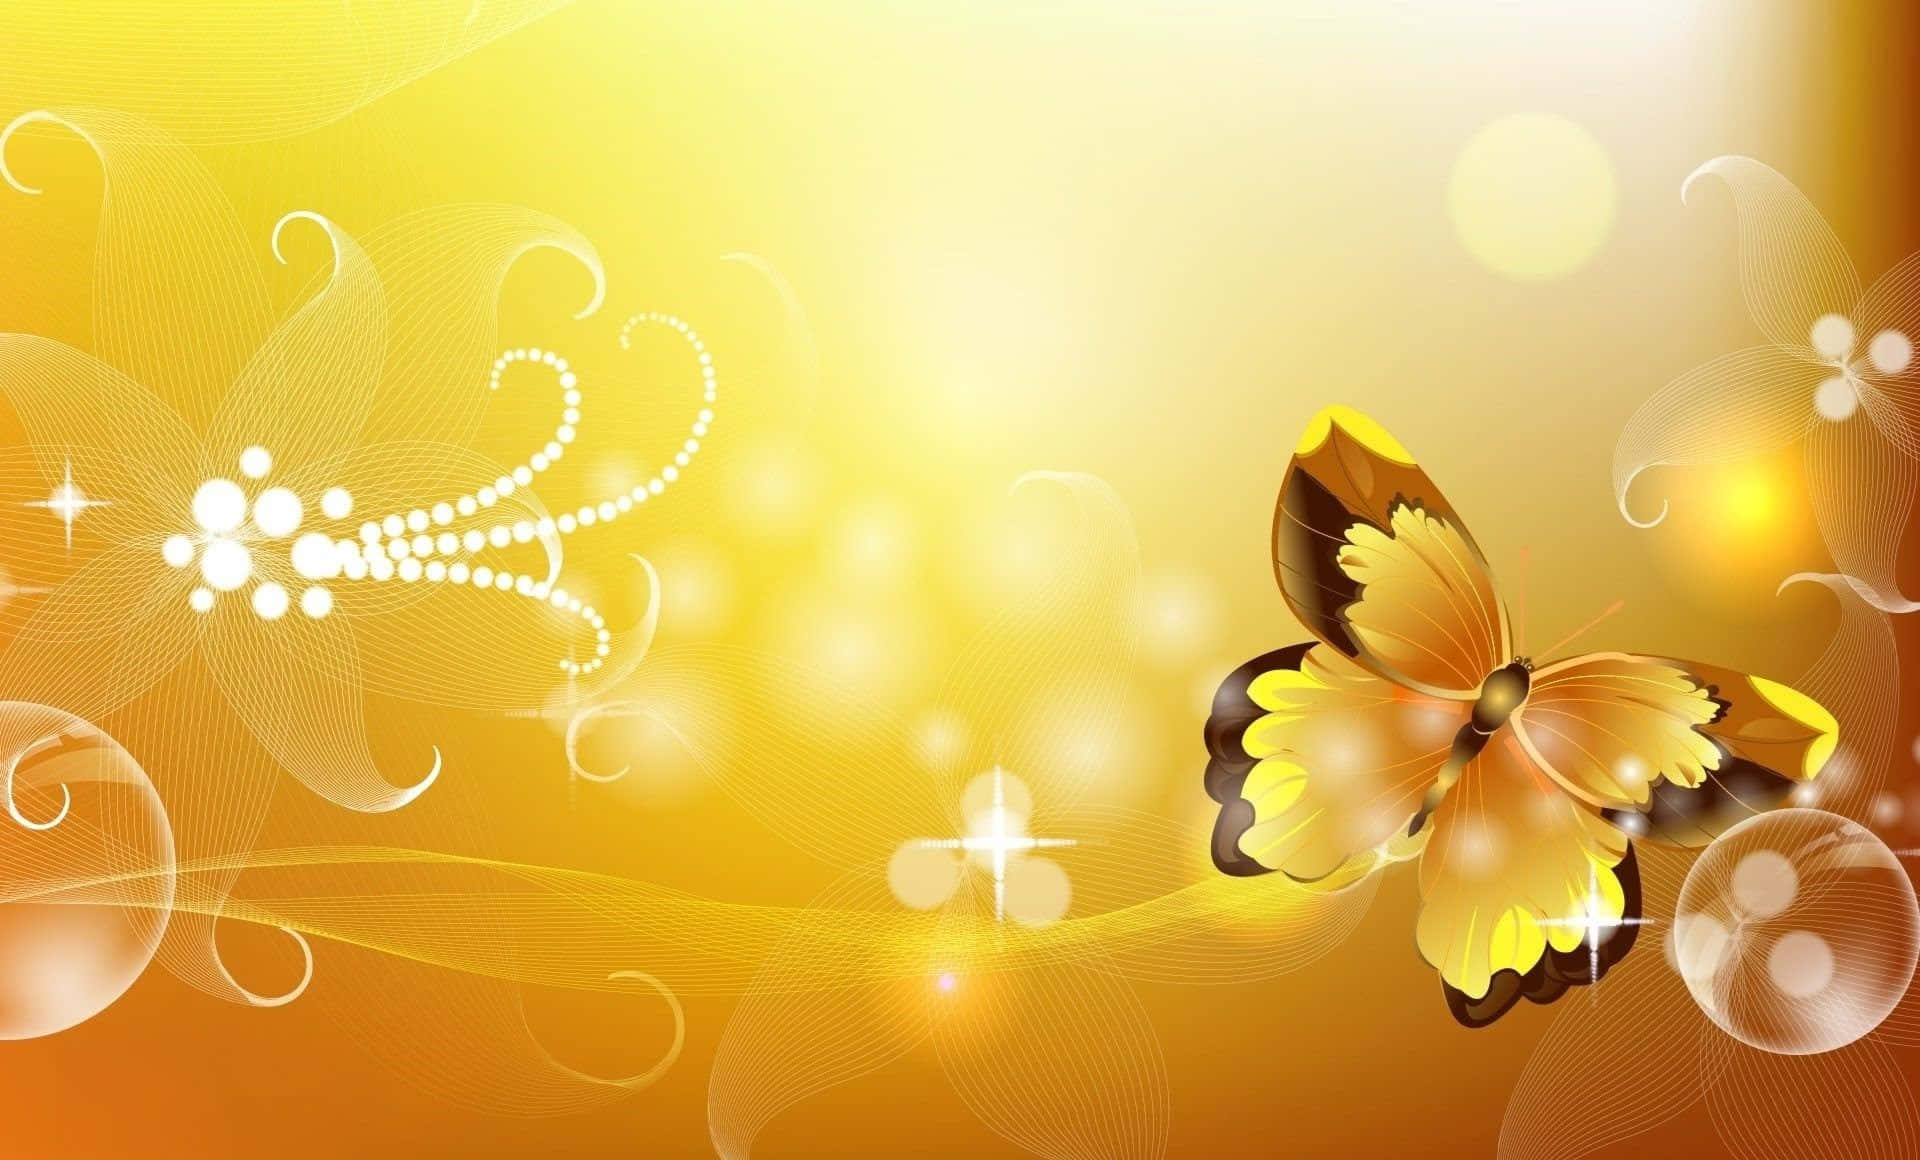 A flight of cute yellow butterflies in the air Wallpaper